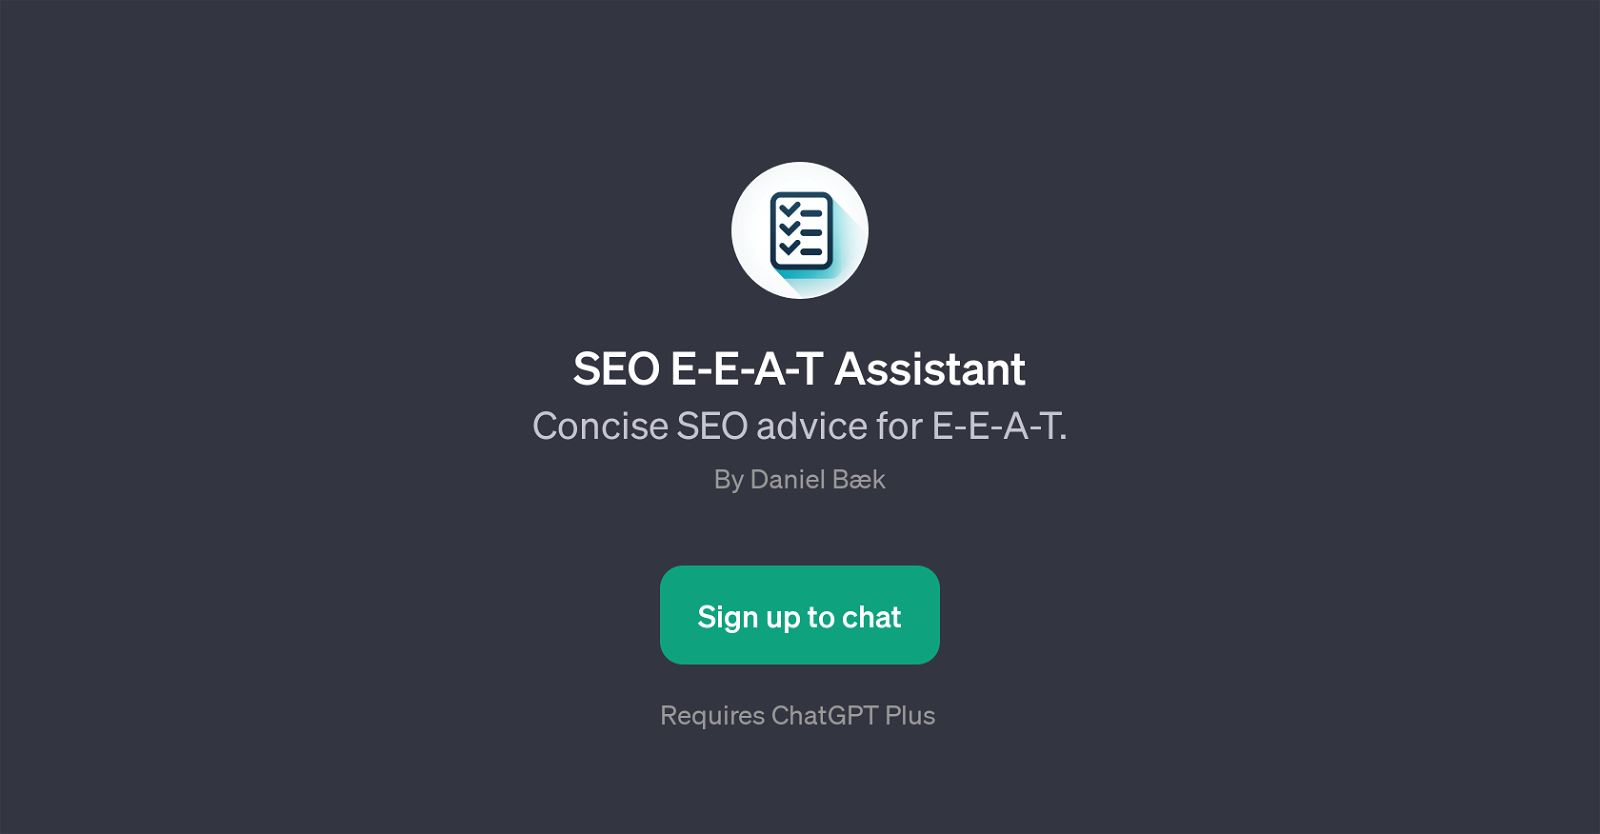 SEO E-E-A-T Assistant website